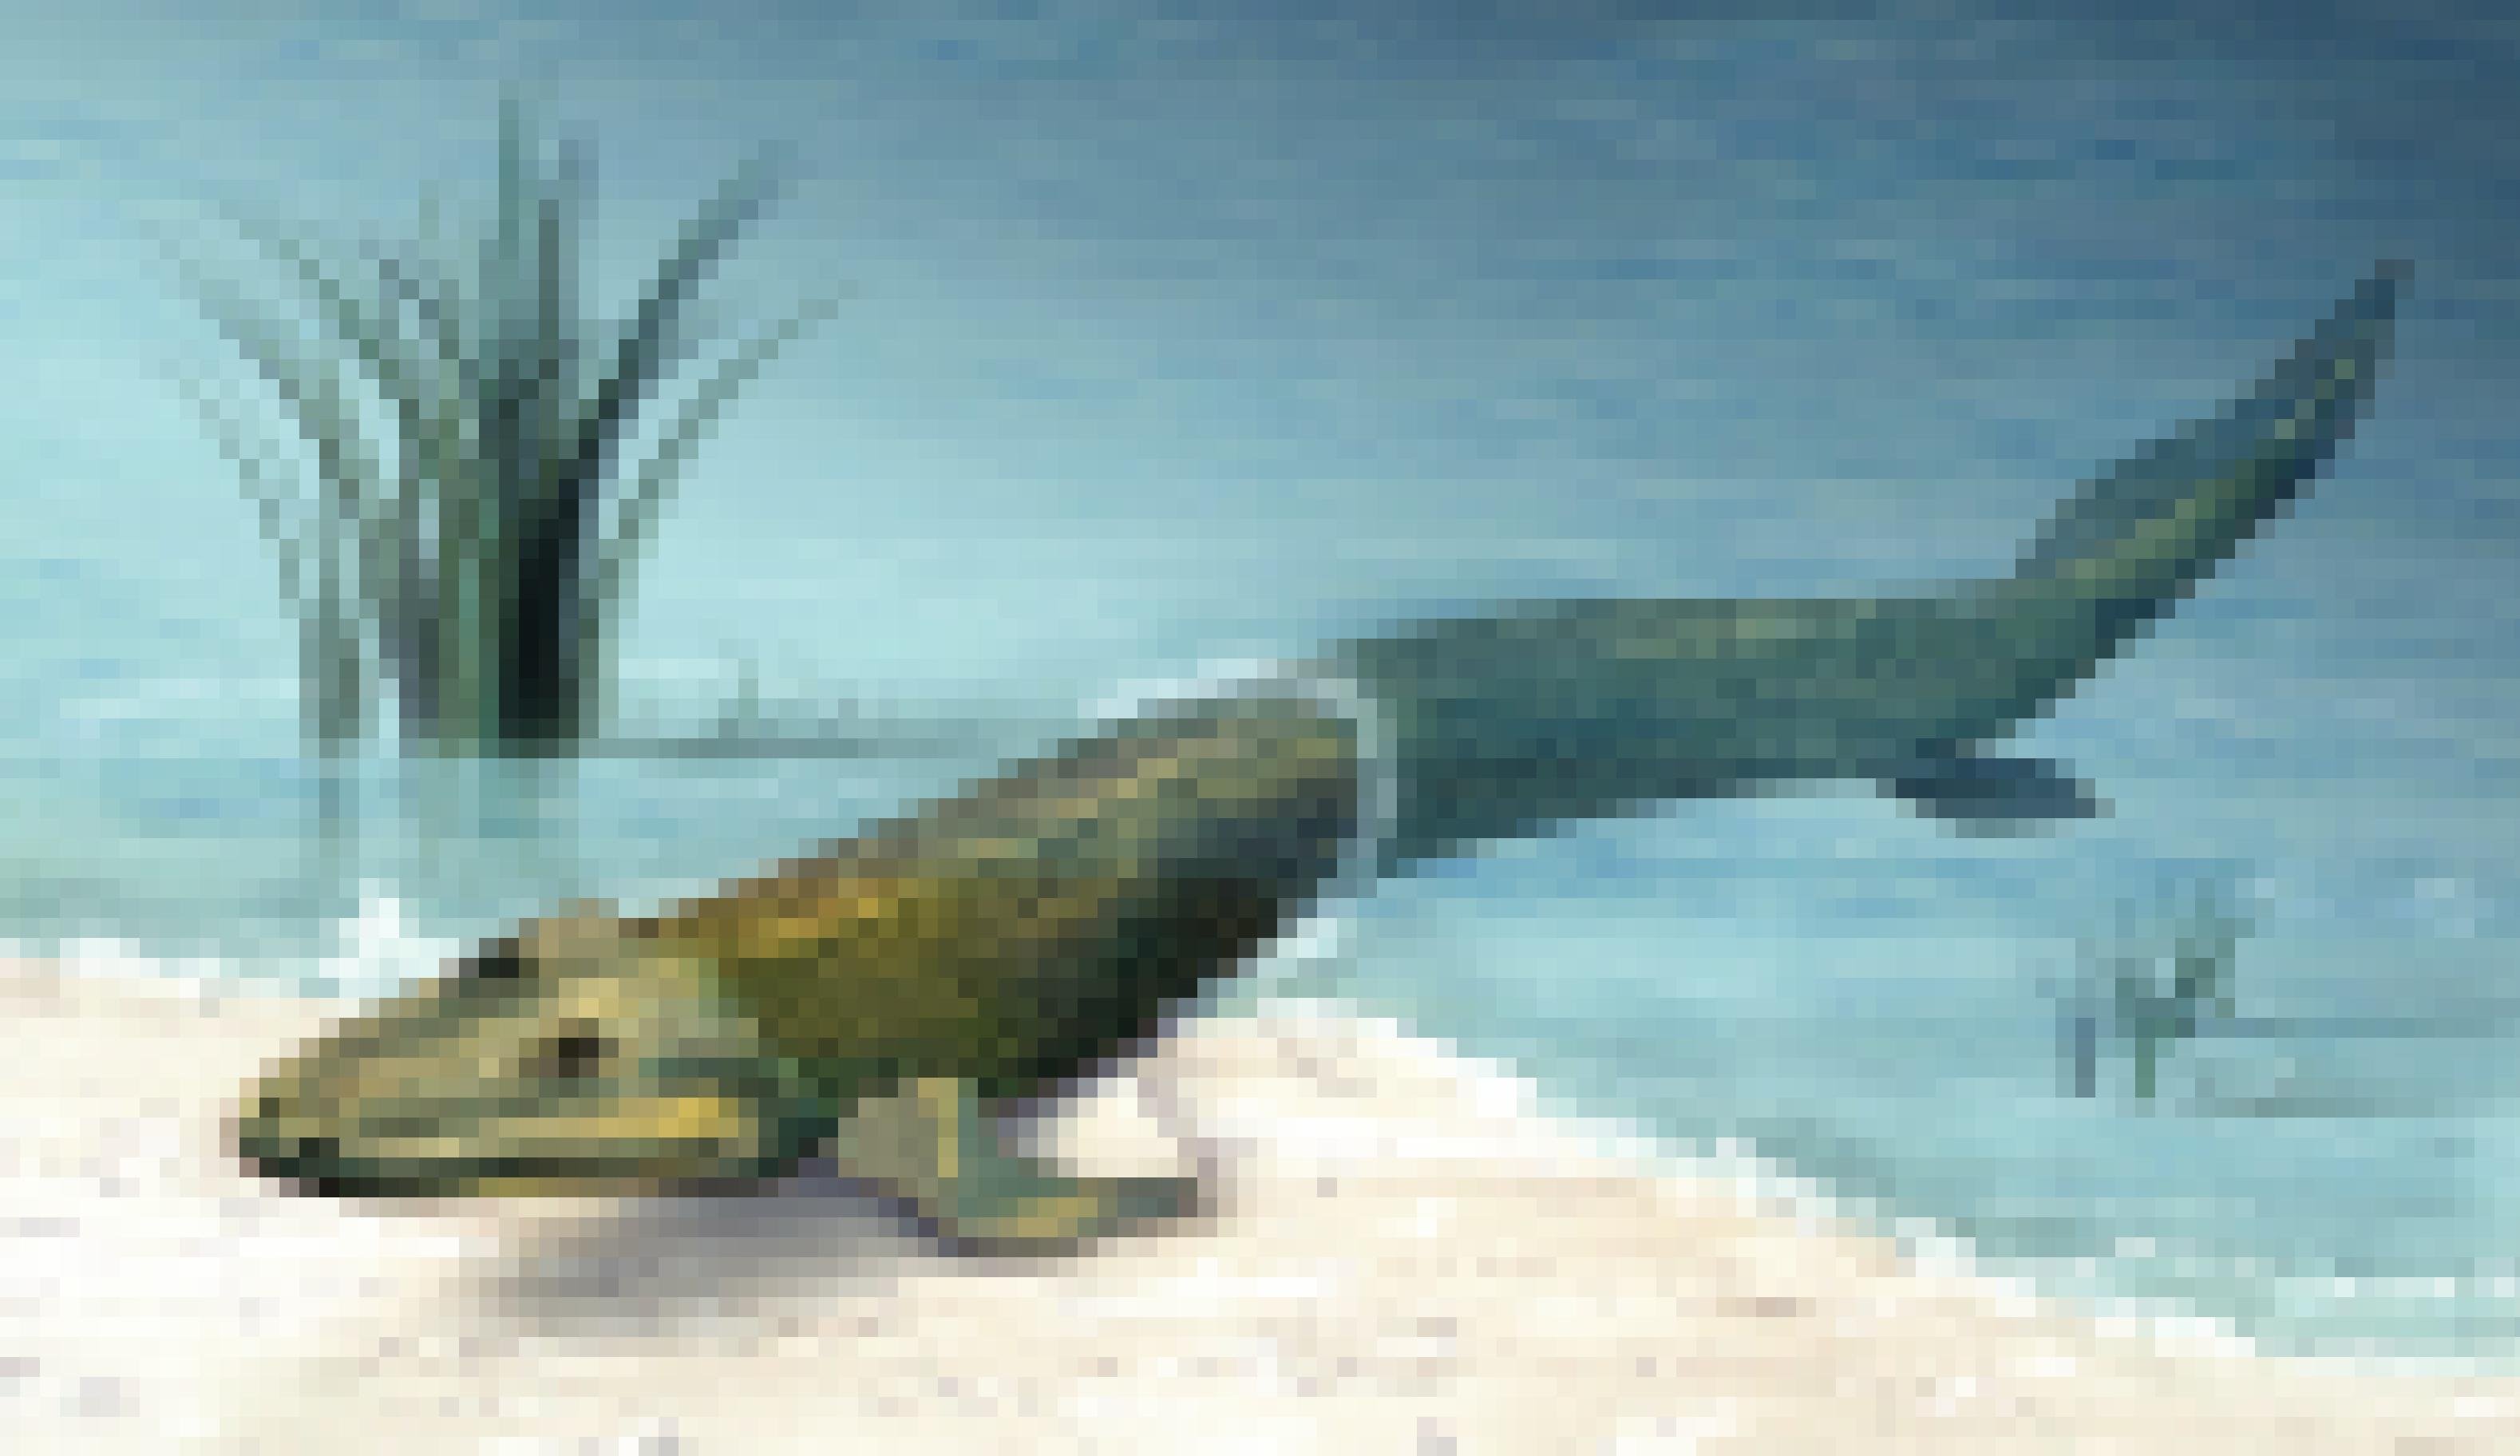 Die Illustration zeigt am flachen Ufer eines Gewässers einen urtümlichen Fisch, dessen Kopf ein wenig an ein Krokodil erinnert. Der Schwanz des Tieres befindet sich noch im blauen Wasser, der vordere Teil des Körpers ruht auf dem sandigen Boden. Dabei stützt sich der Fisch mit seinen kräftigen, beinähnlichen Flossen auf.